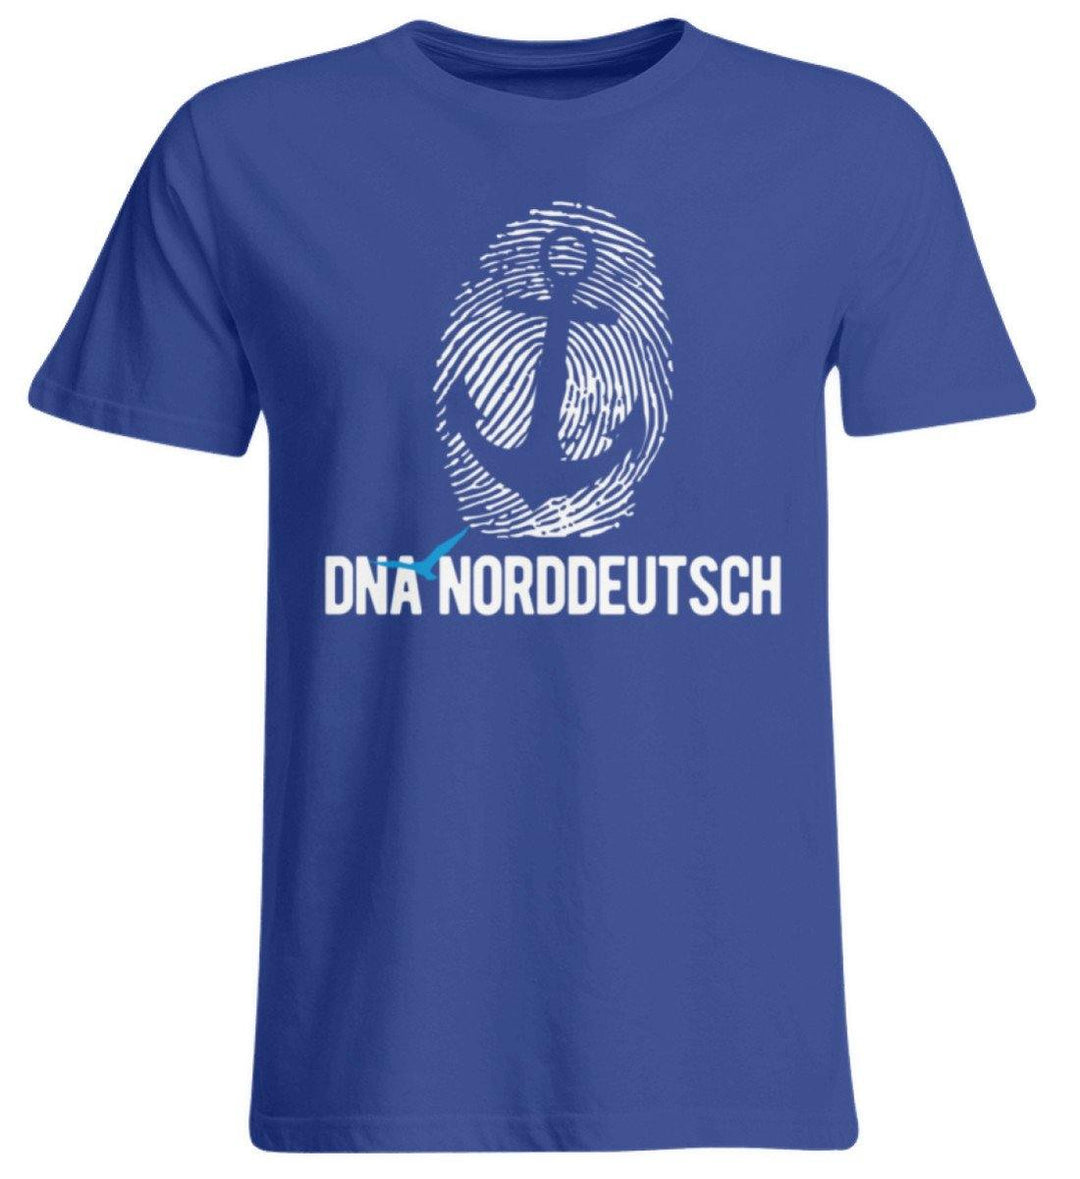 DNA Norddeutsch  - Übergrößenshirt - Words on Shirts Sag es mit dem Mittelfinger Shirts Hoodies Sweatshirt Taschen Gymsack Spruch Sprüche Statement